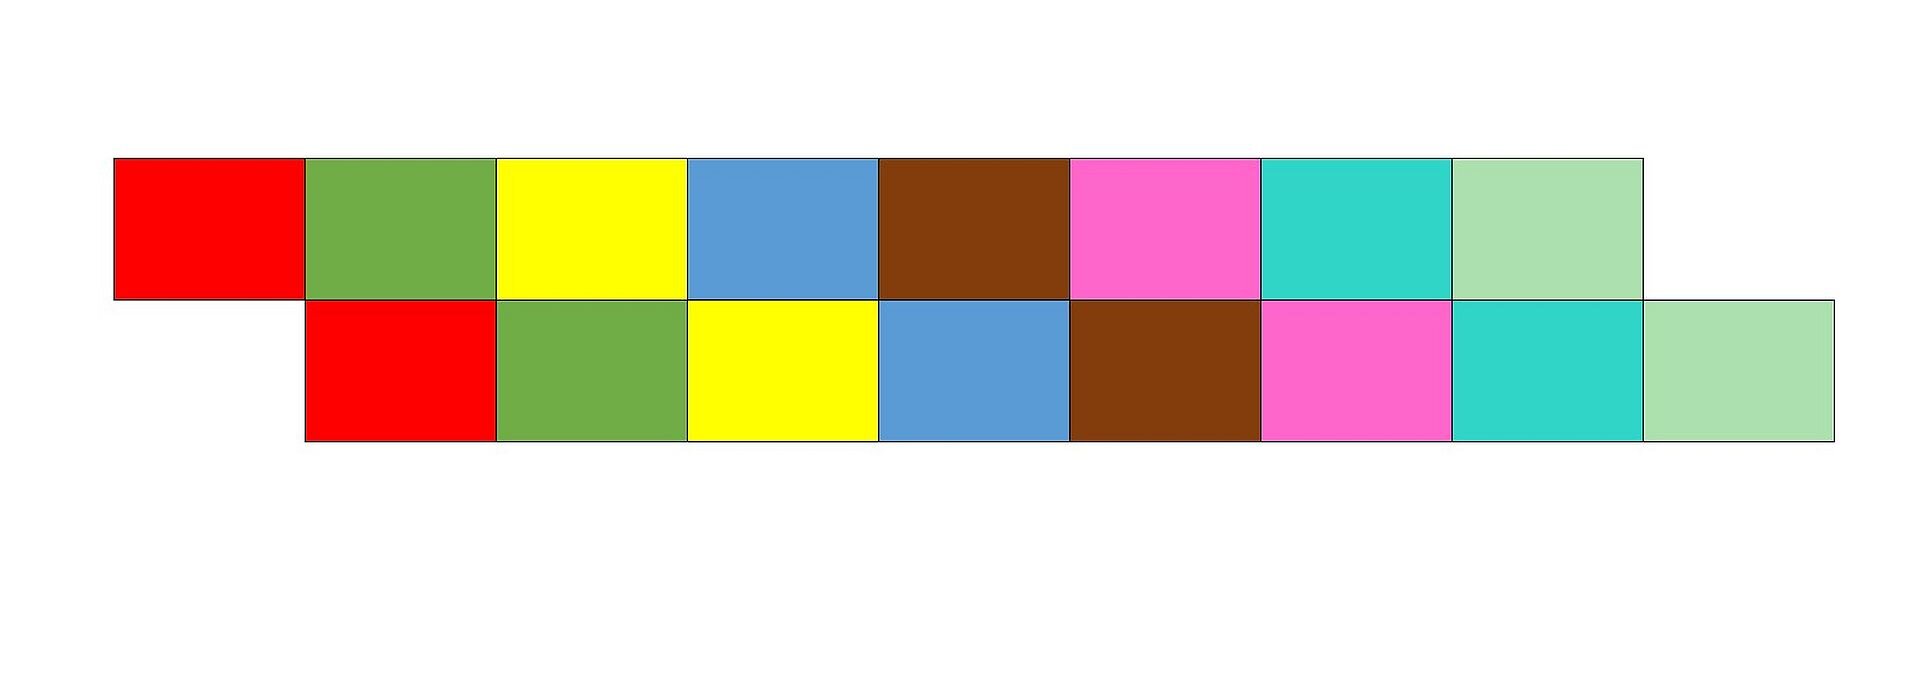 Ilustracja przedstawia schemat kanonu dwugłosowego, w którym drugi głos powtarza po jednym takcie. Melodię przedstawiono jako szereg kolorowych prostokątów. Występują one w ustalonym porządku: czerwony, zielony, żółty, niebieski, brązowy, purpurowy, morski, seledynowy. W zapisie są dwa rzędy. W obu rzędach kolory występują w tej samej kolejności, tylko w drugim rzędzie są przesunięte o jeden. Na przykład pod zielonym znajduje się czerwony, pod żółtym zielony itd.